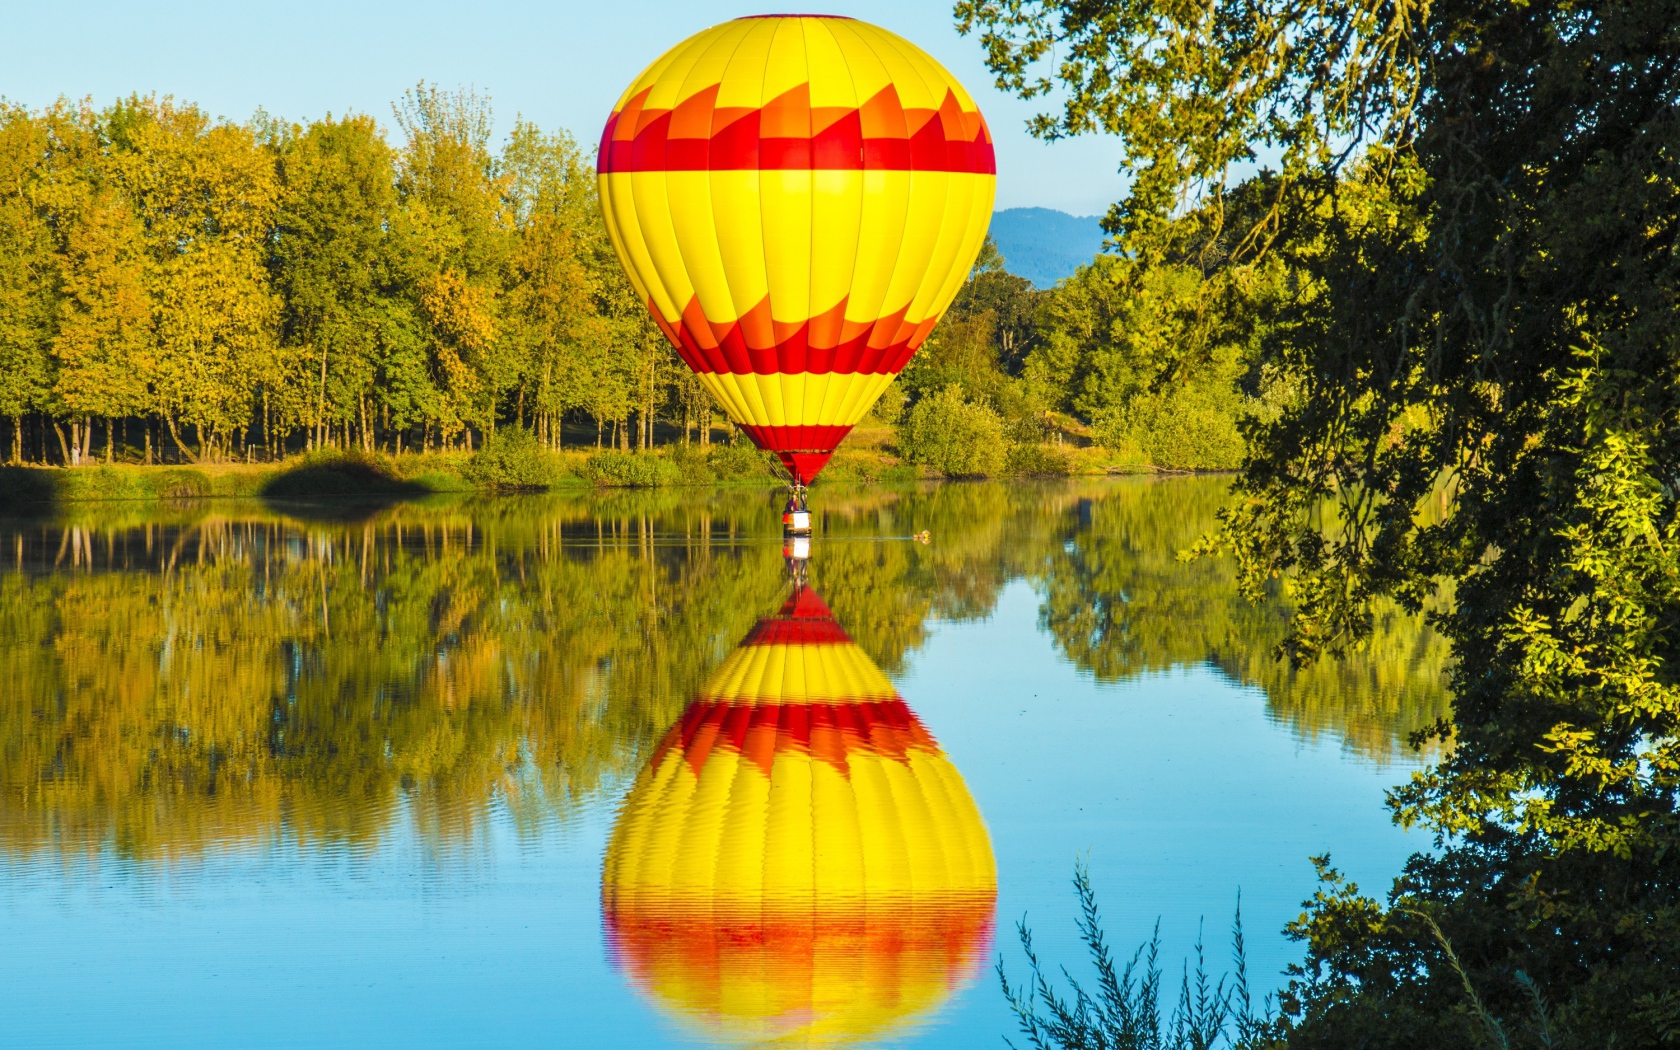 Big balloon over the lake